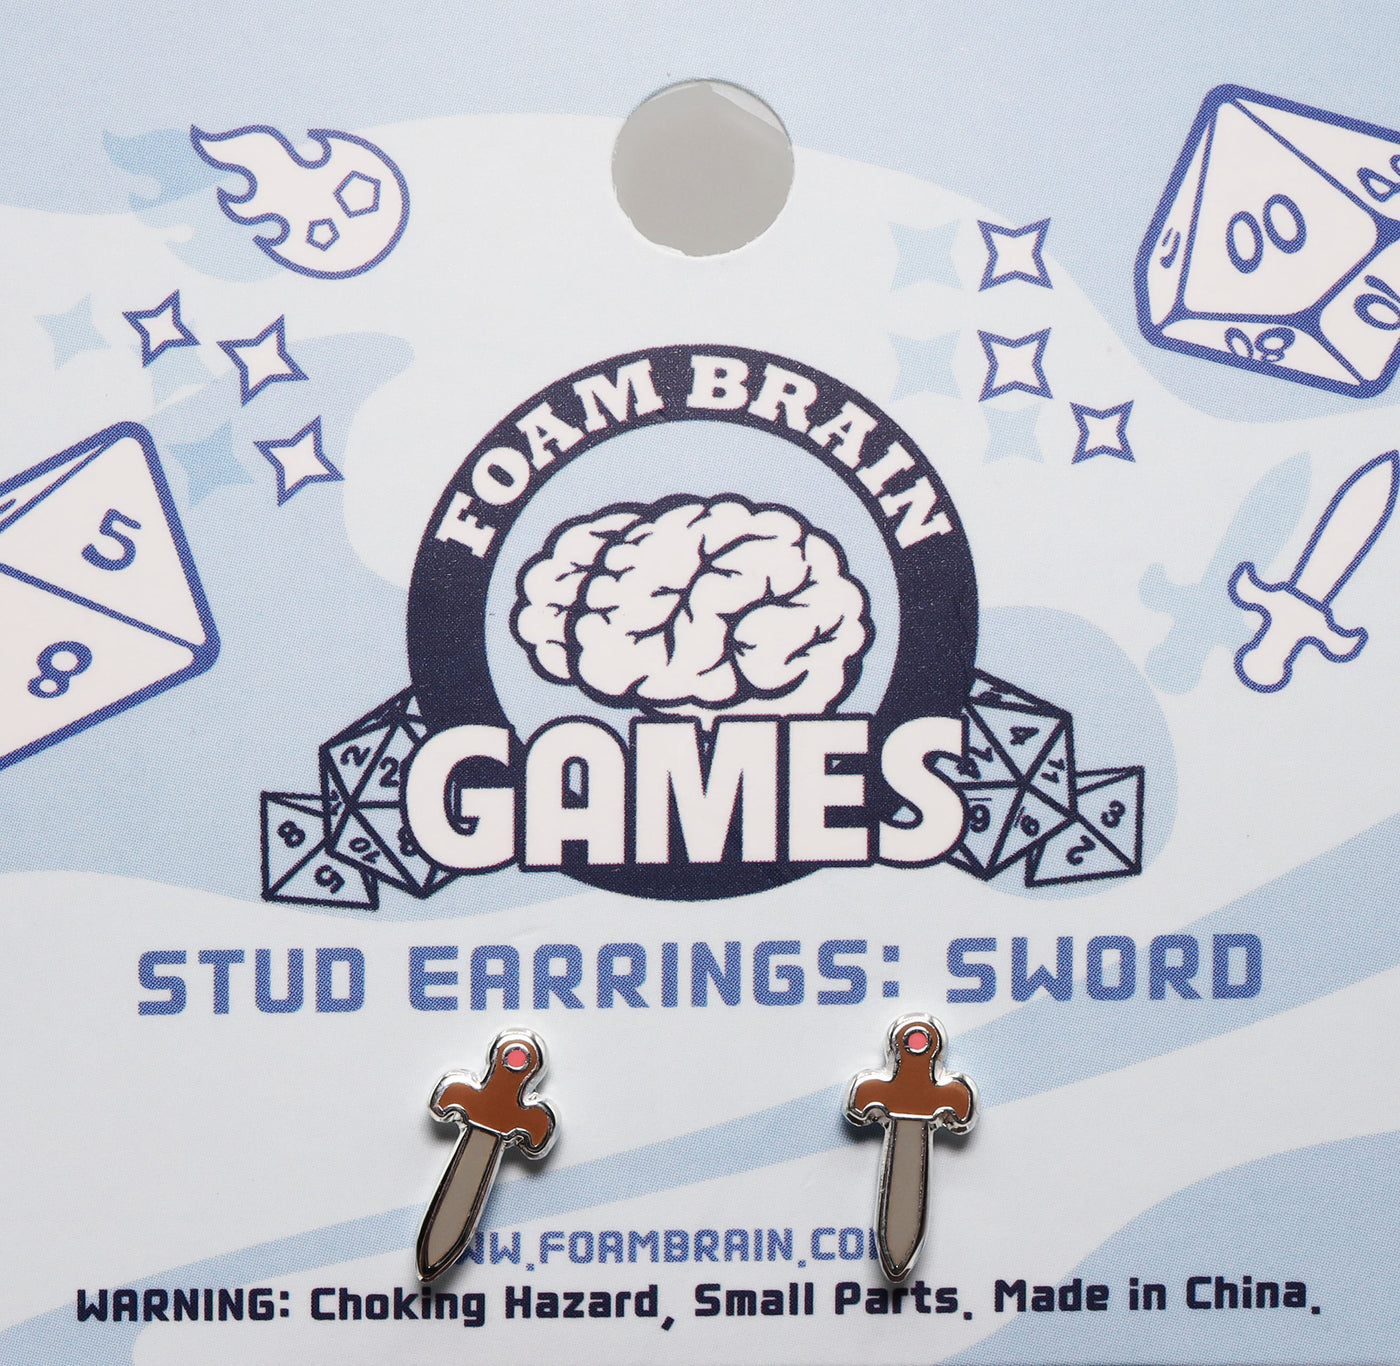 Stud Earrings: Sword Jewelry Foam Brain Games